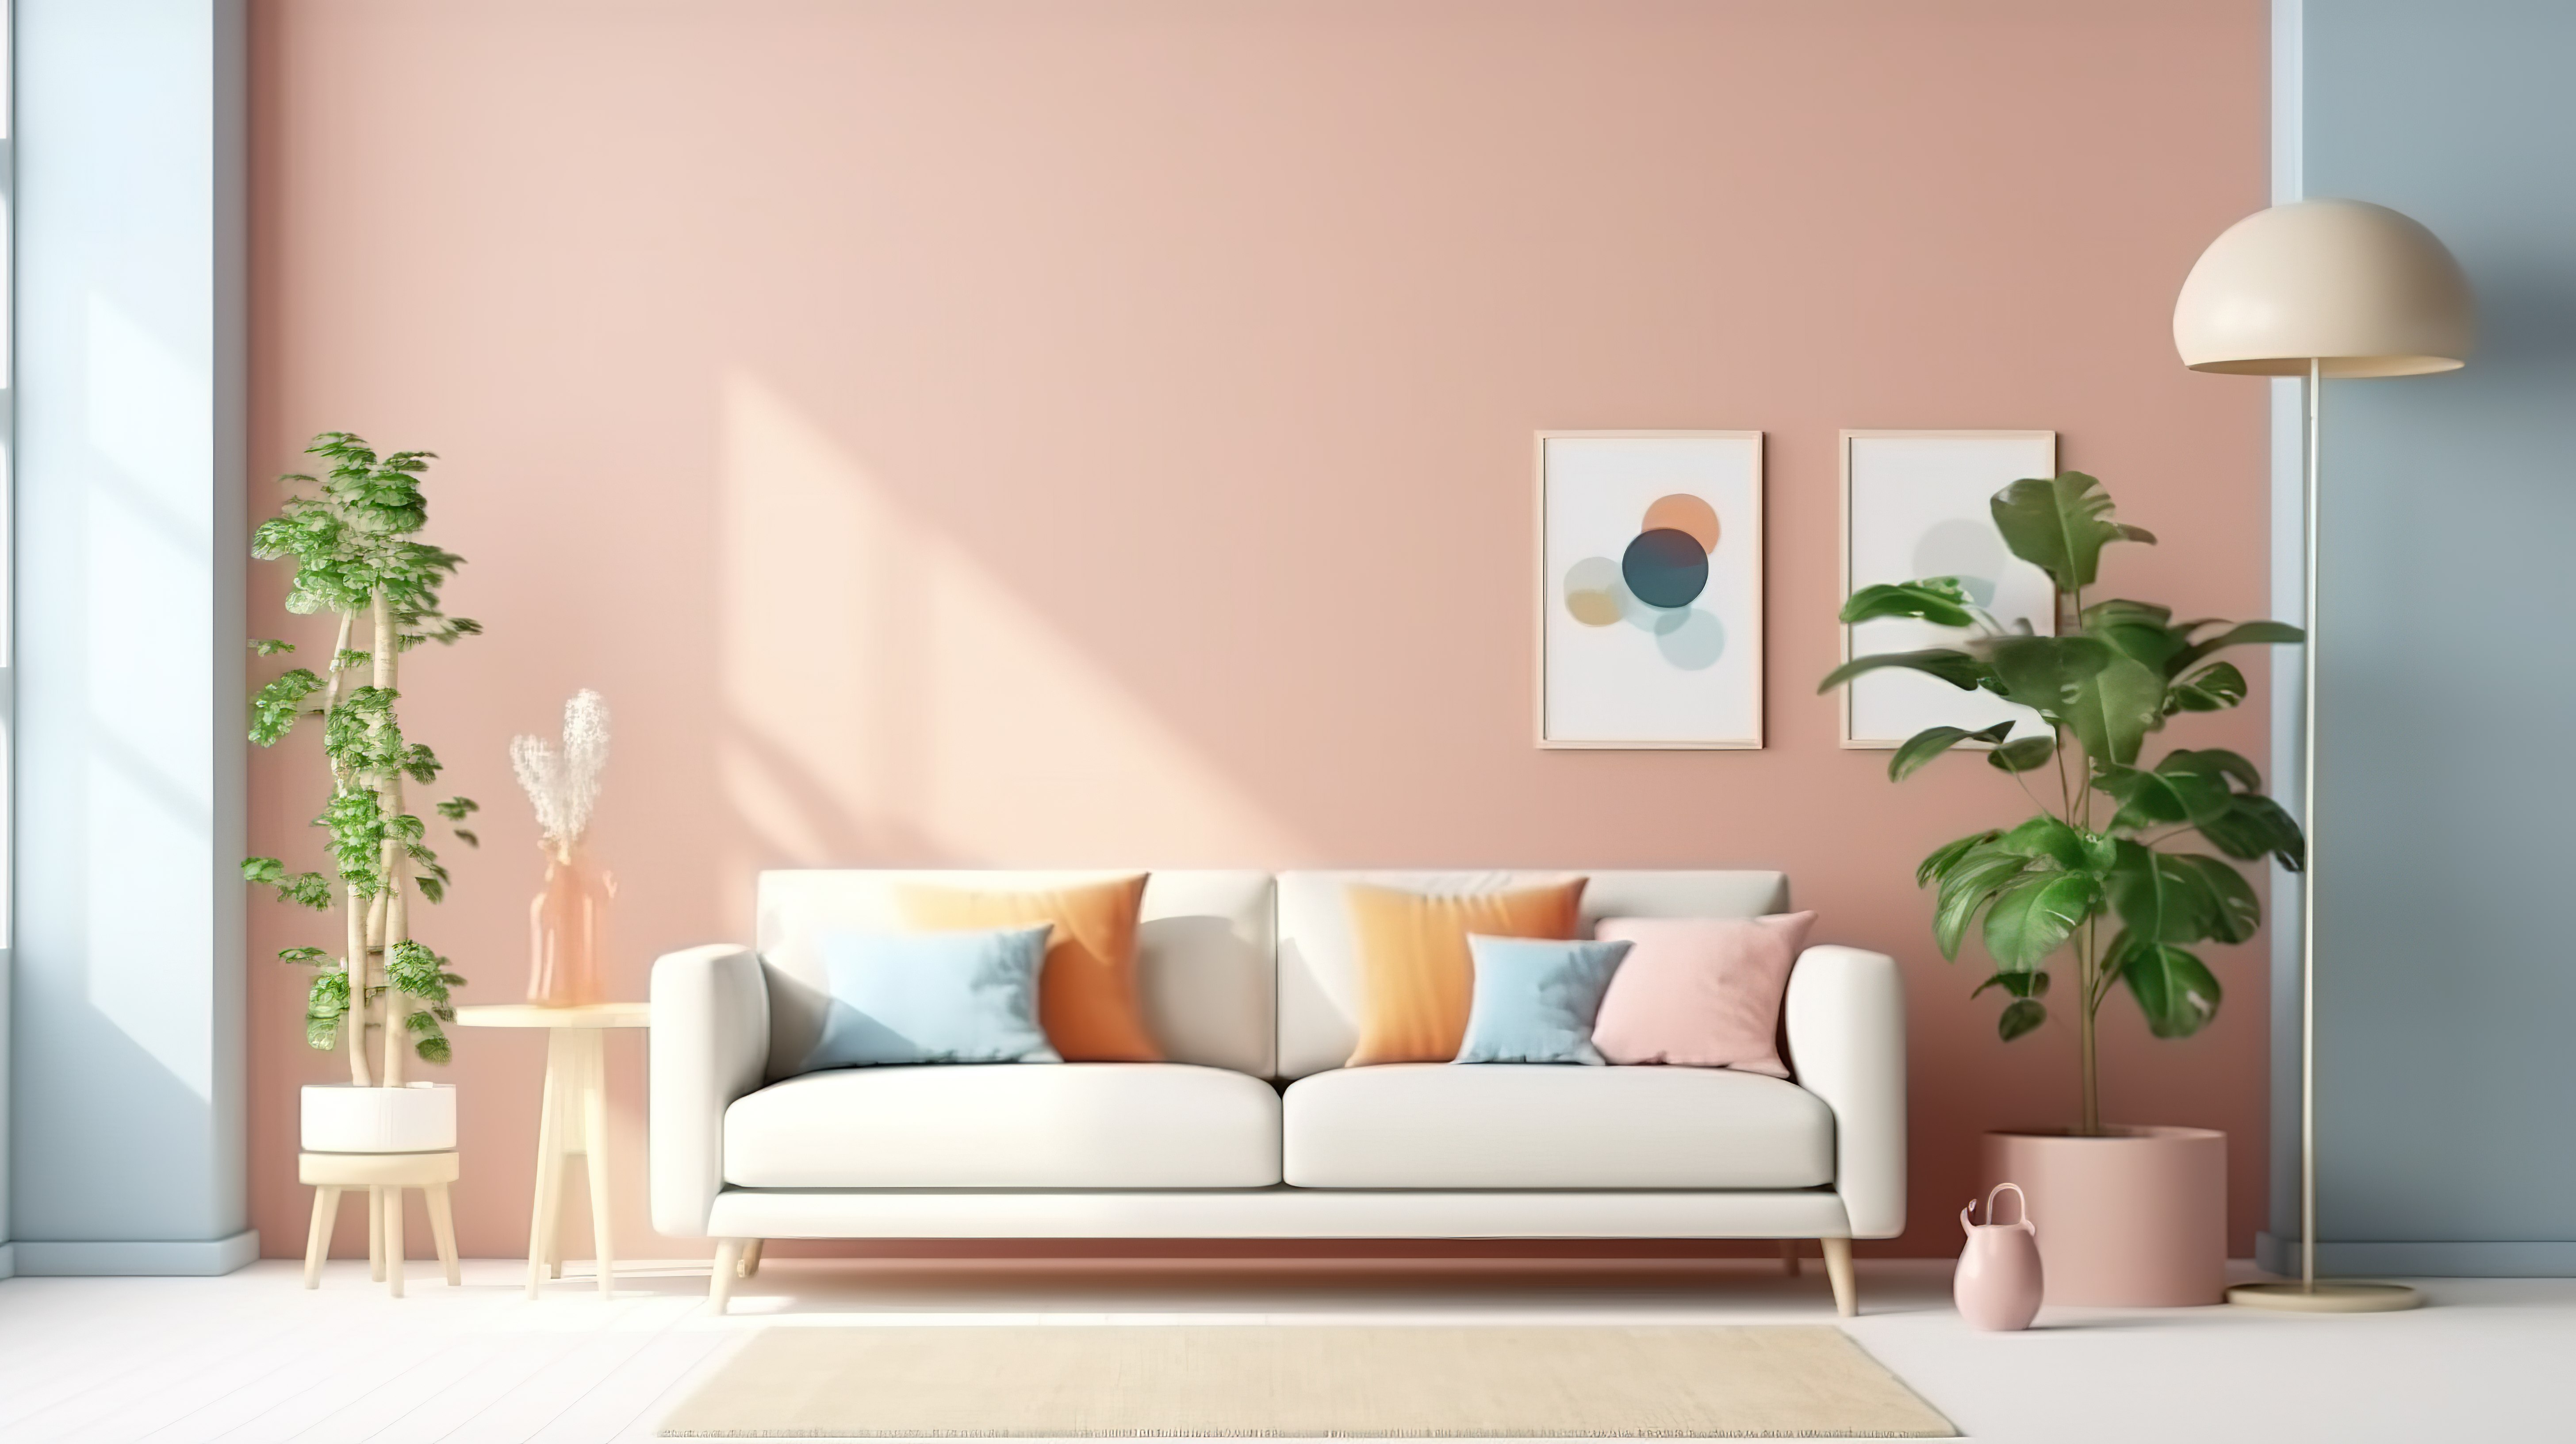 3D 渲染的室内海报模型，展示了一个充满活力的客厅，配有白色沙发图片